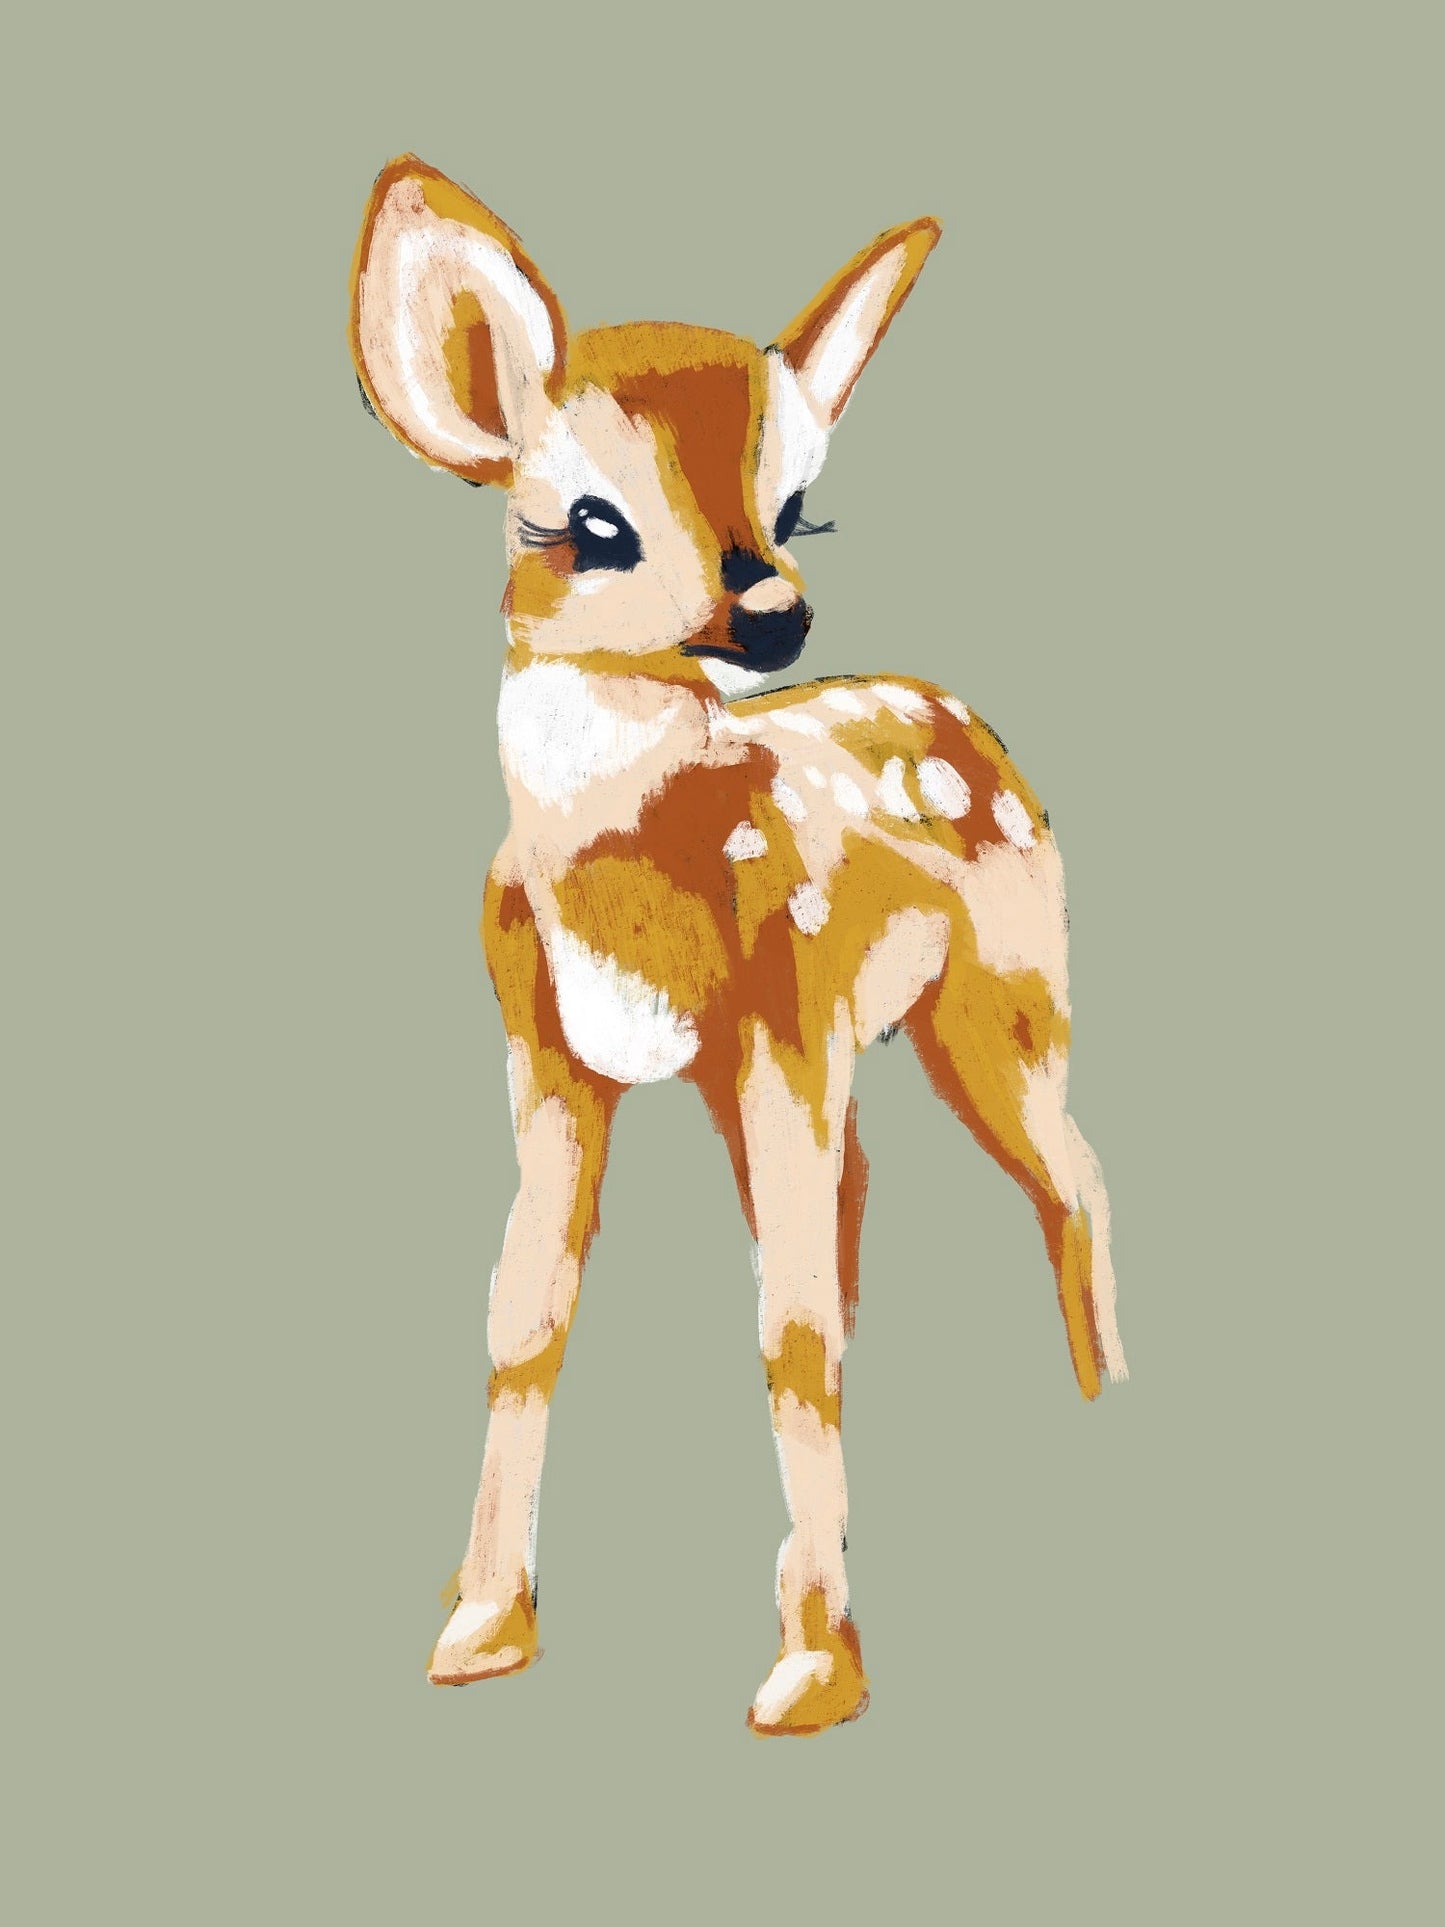 Deer XL Poster